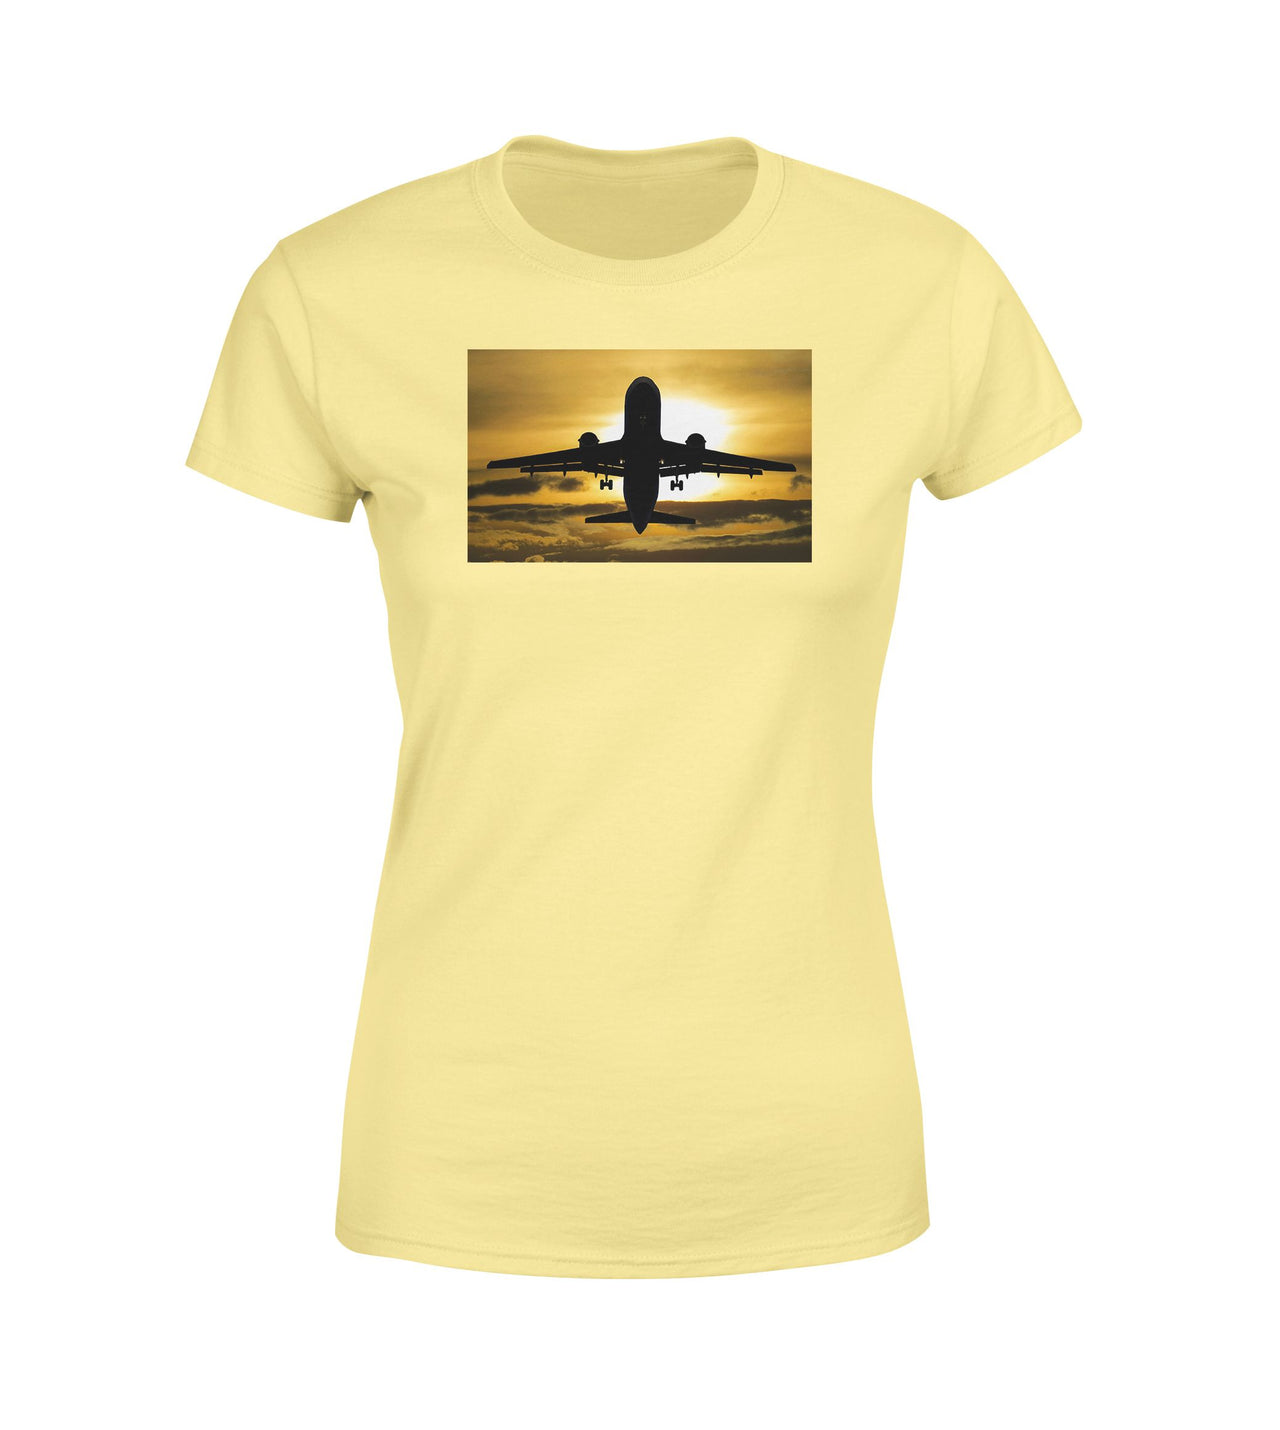 Departing Passanger Jet During Sunset Designed Women T-Shirts